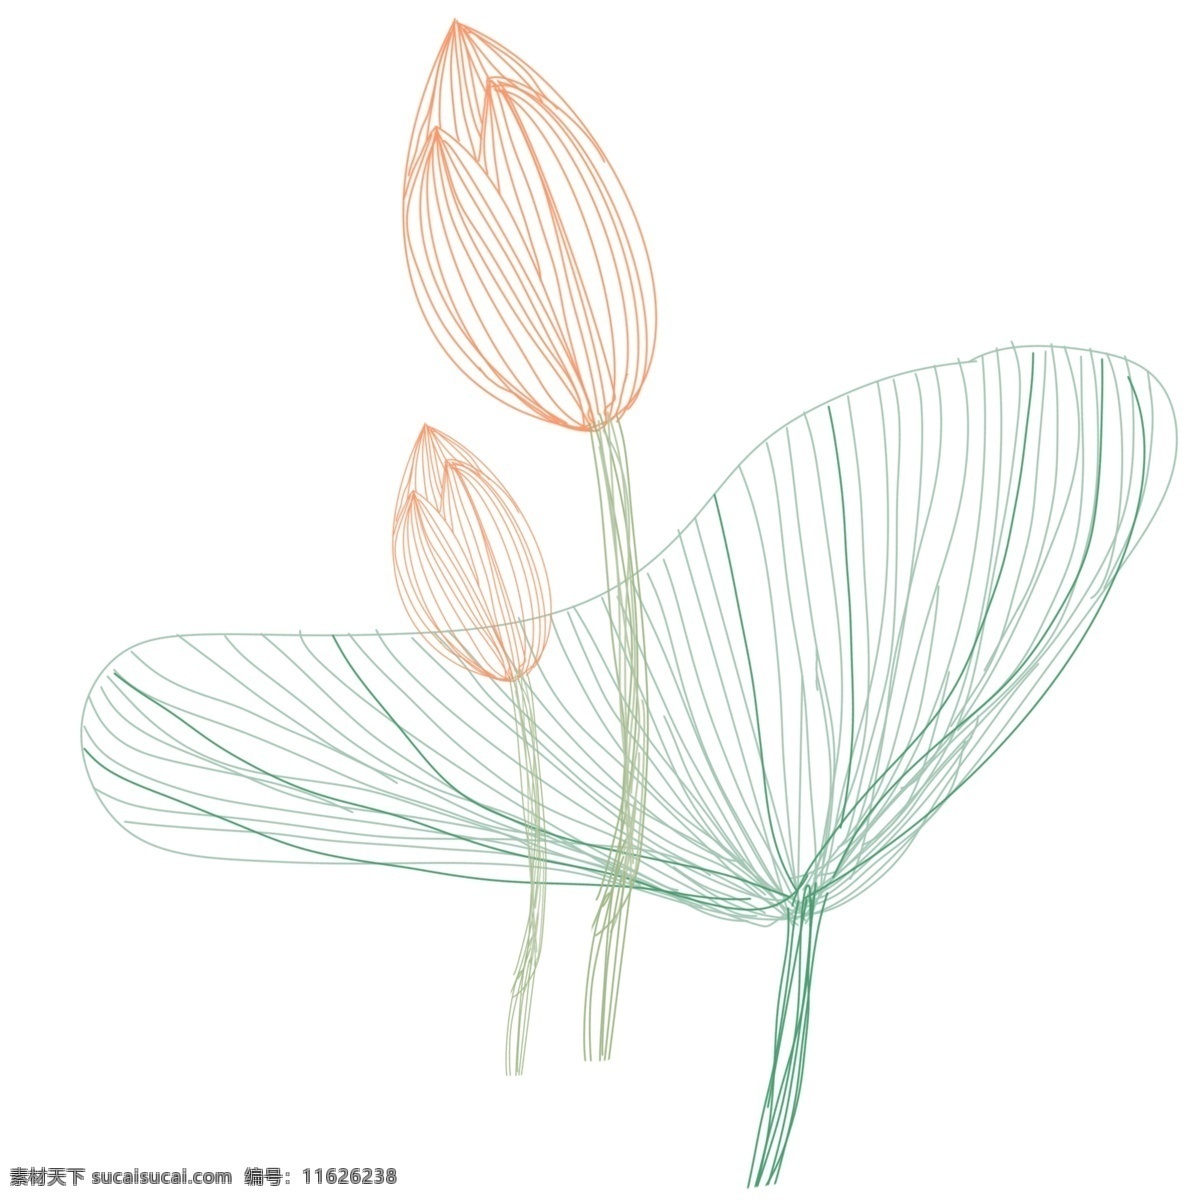 线条 荷花 装饰 插画 粉色的荷花 线条荷花 漂亮的荷花 绿色的荷叶 植物装饰 创意荷花 立体荷花